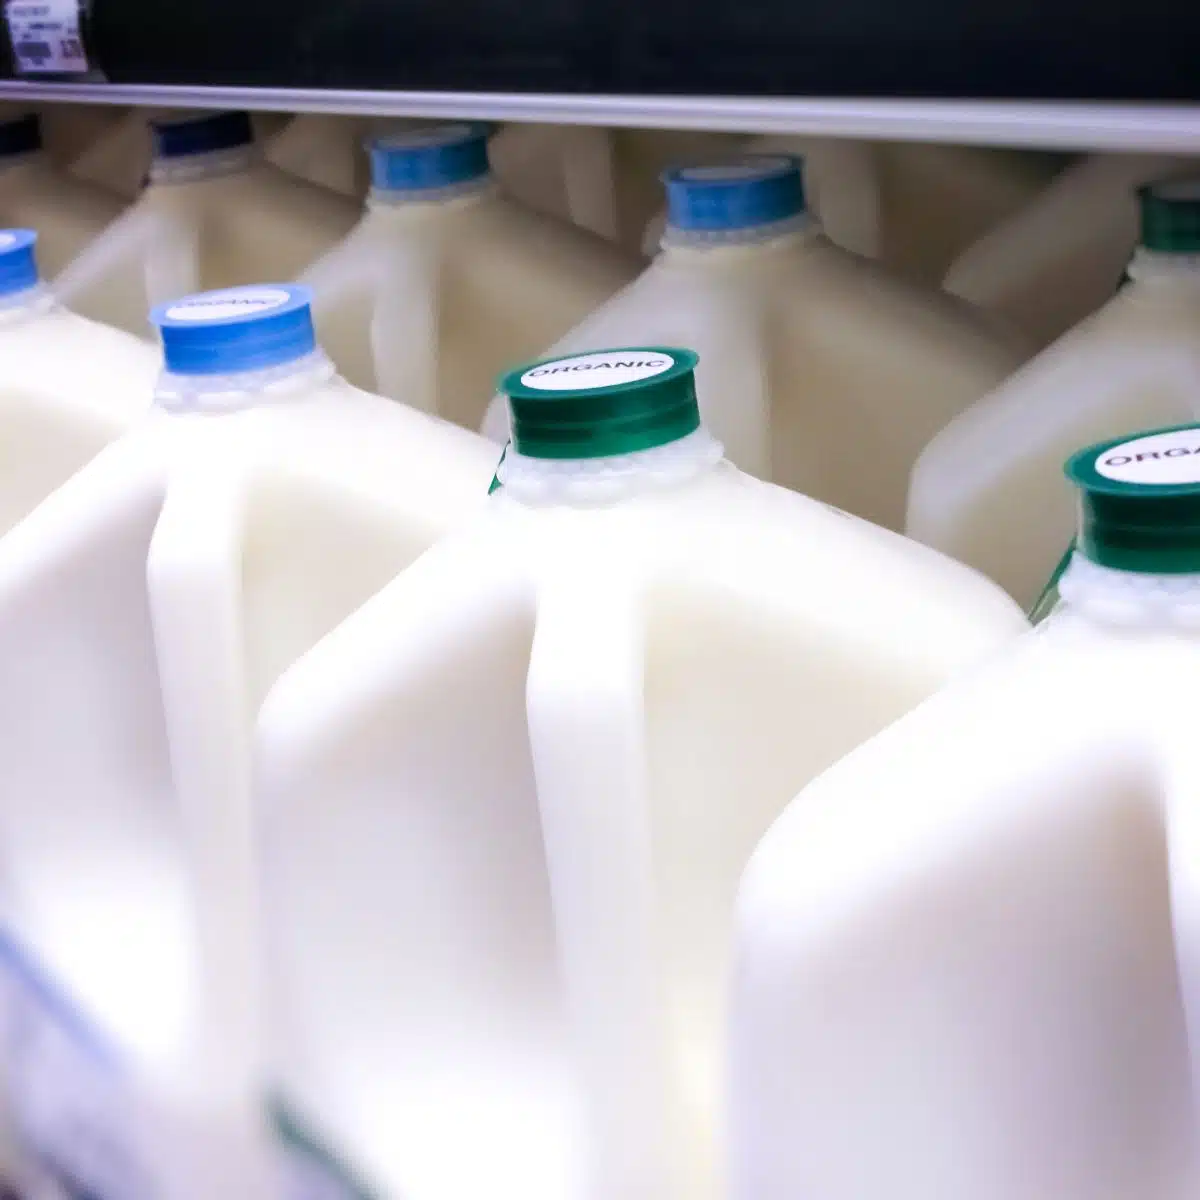 Квадратное изображение, показывающее галлоны молока.